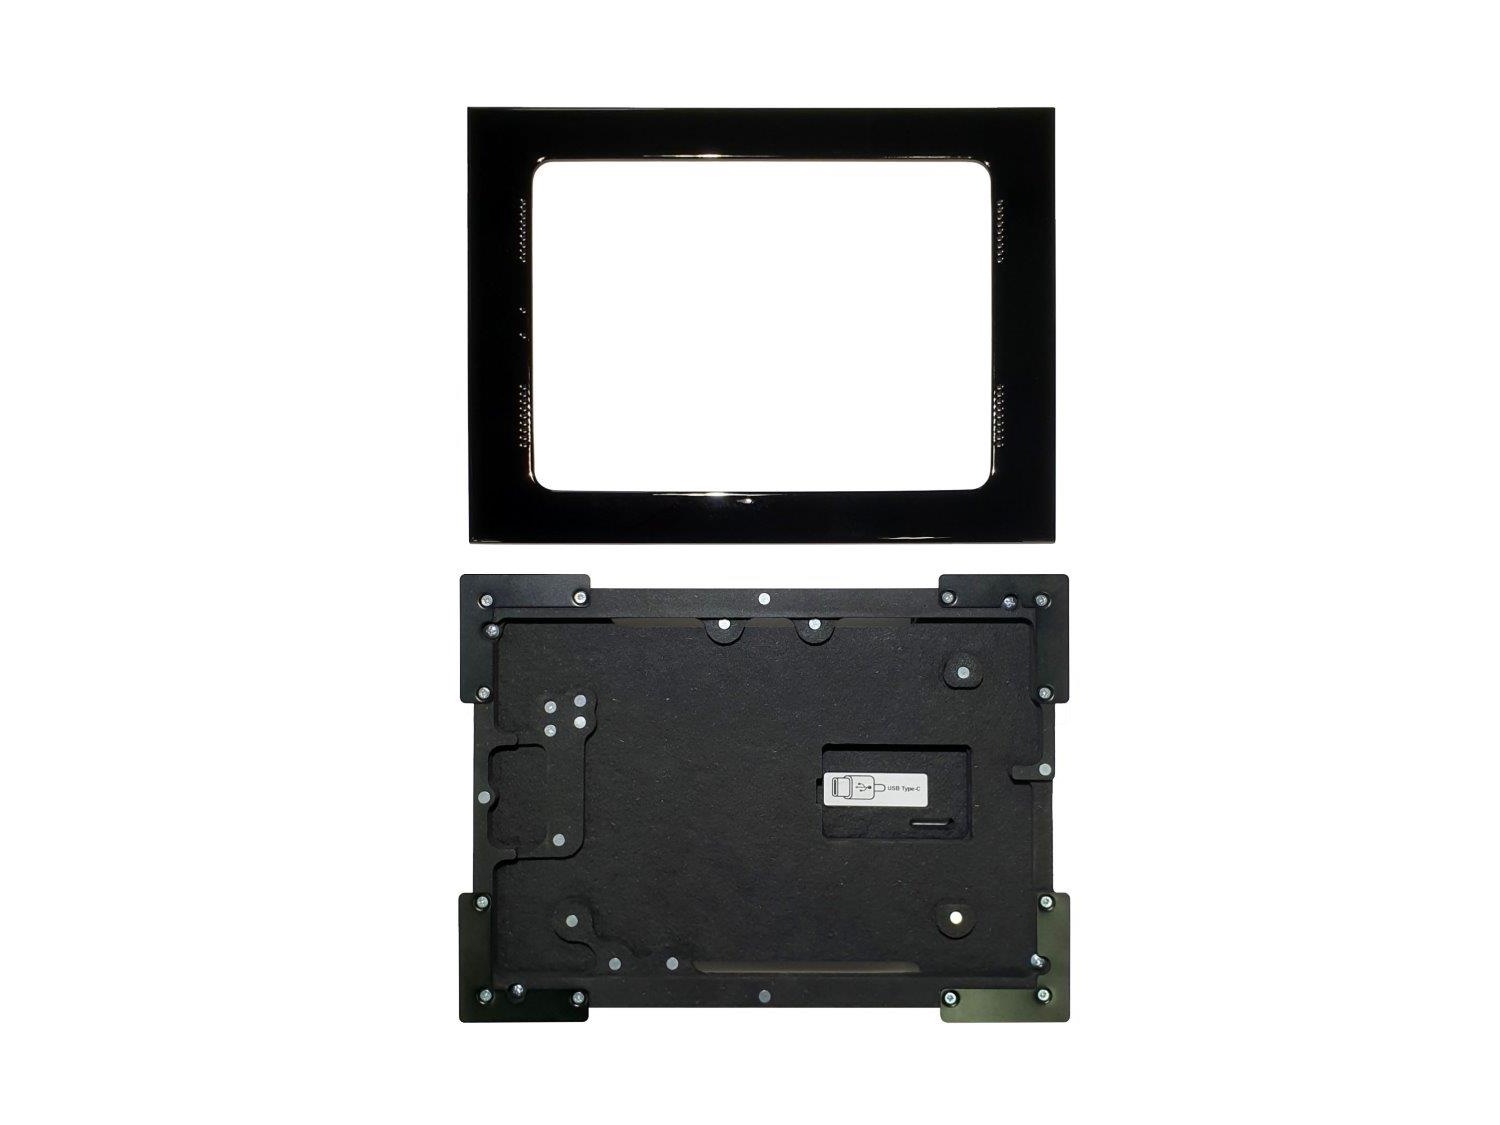 002-1-838-BL Retrofit Mount for Ipad Pro 11 inch 2nd Gen (Black) by Wall-Smart